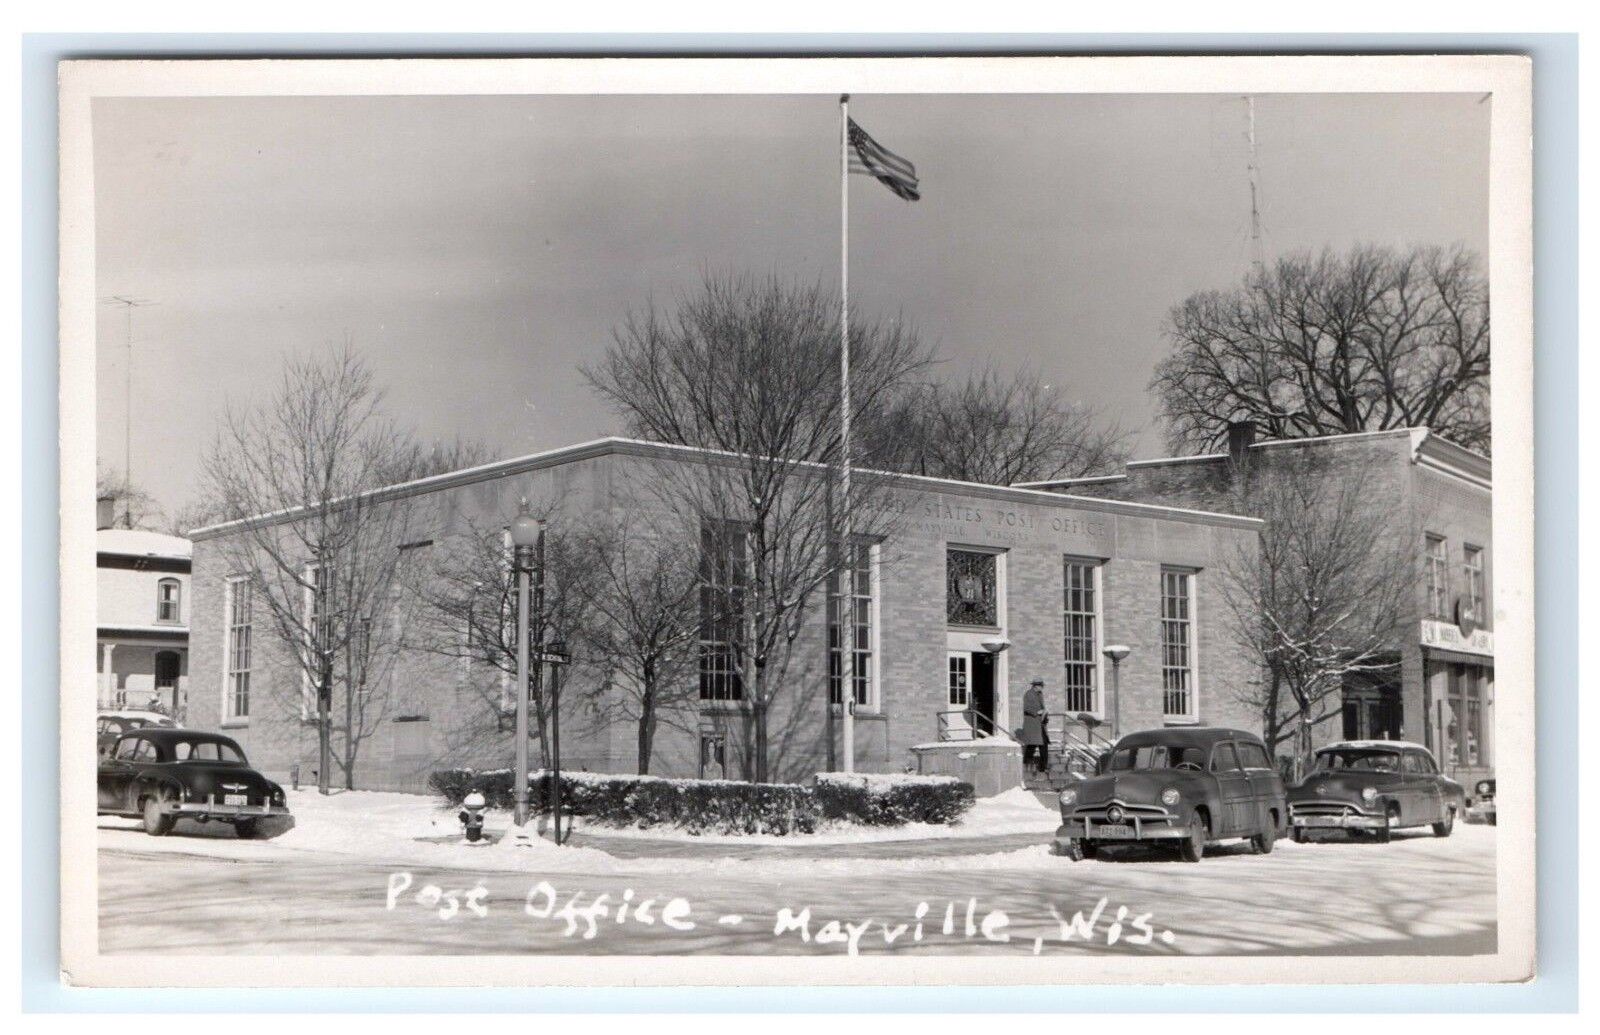 Postcard Post Office, Mayville, Wisconsin winter scene snow RPPC H5